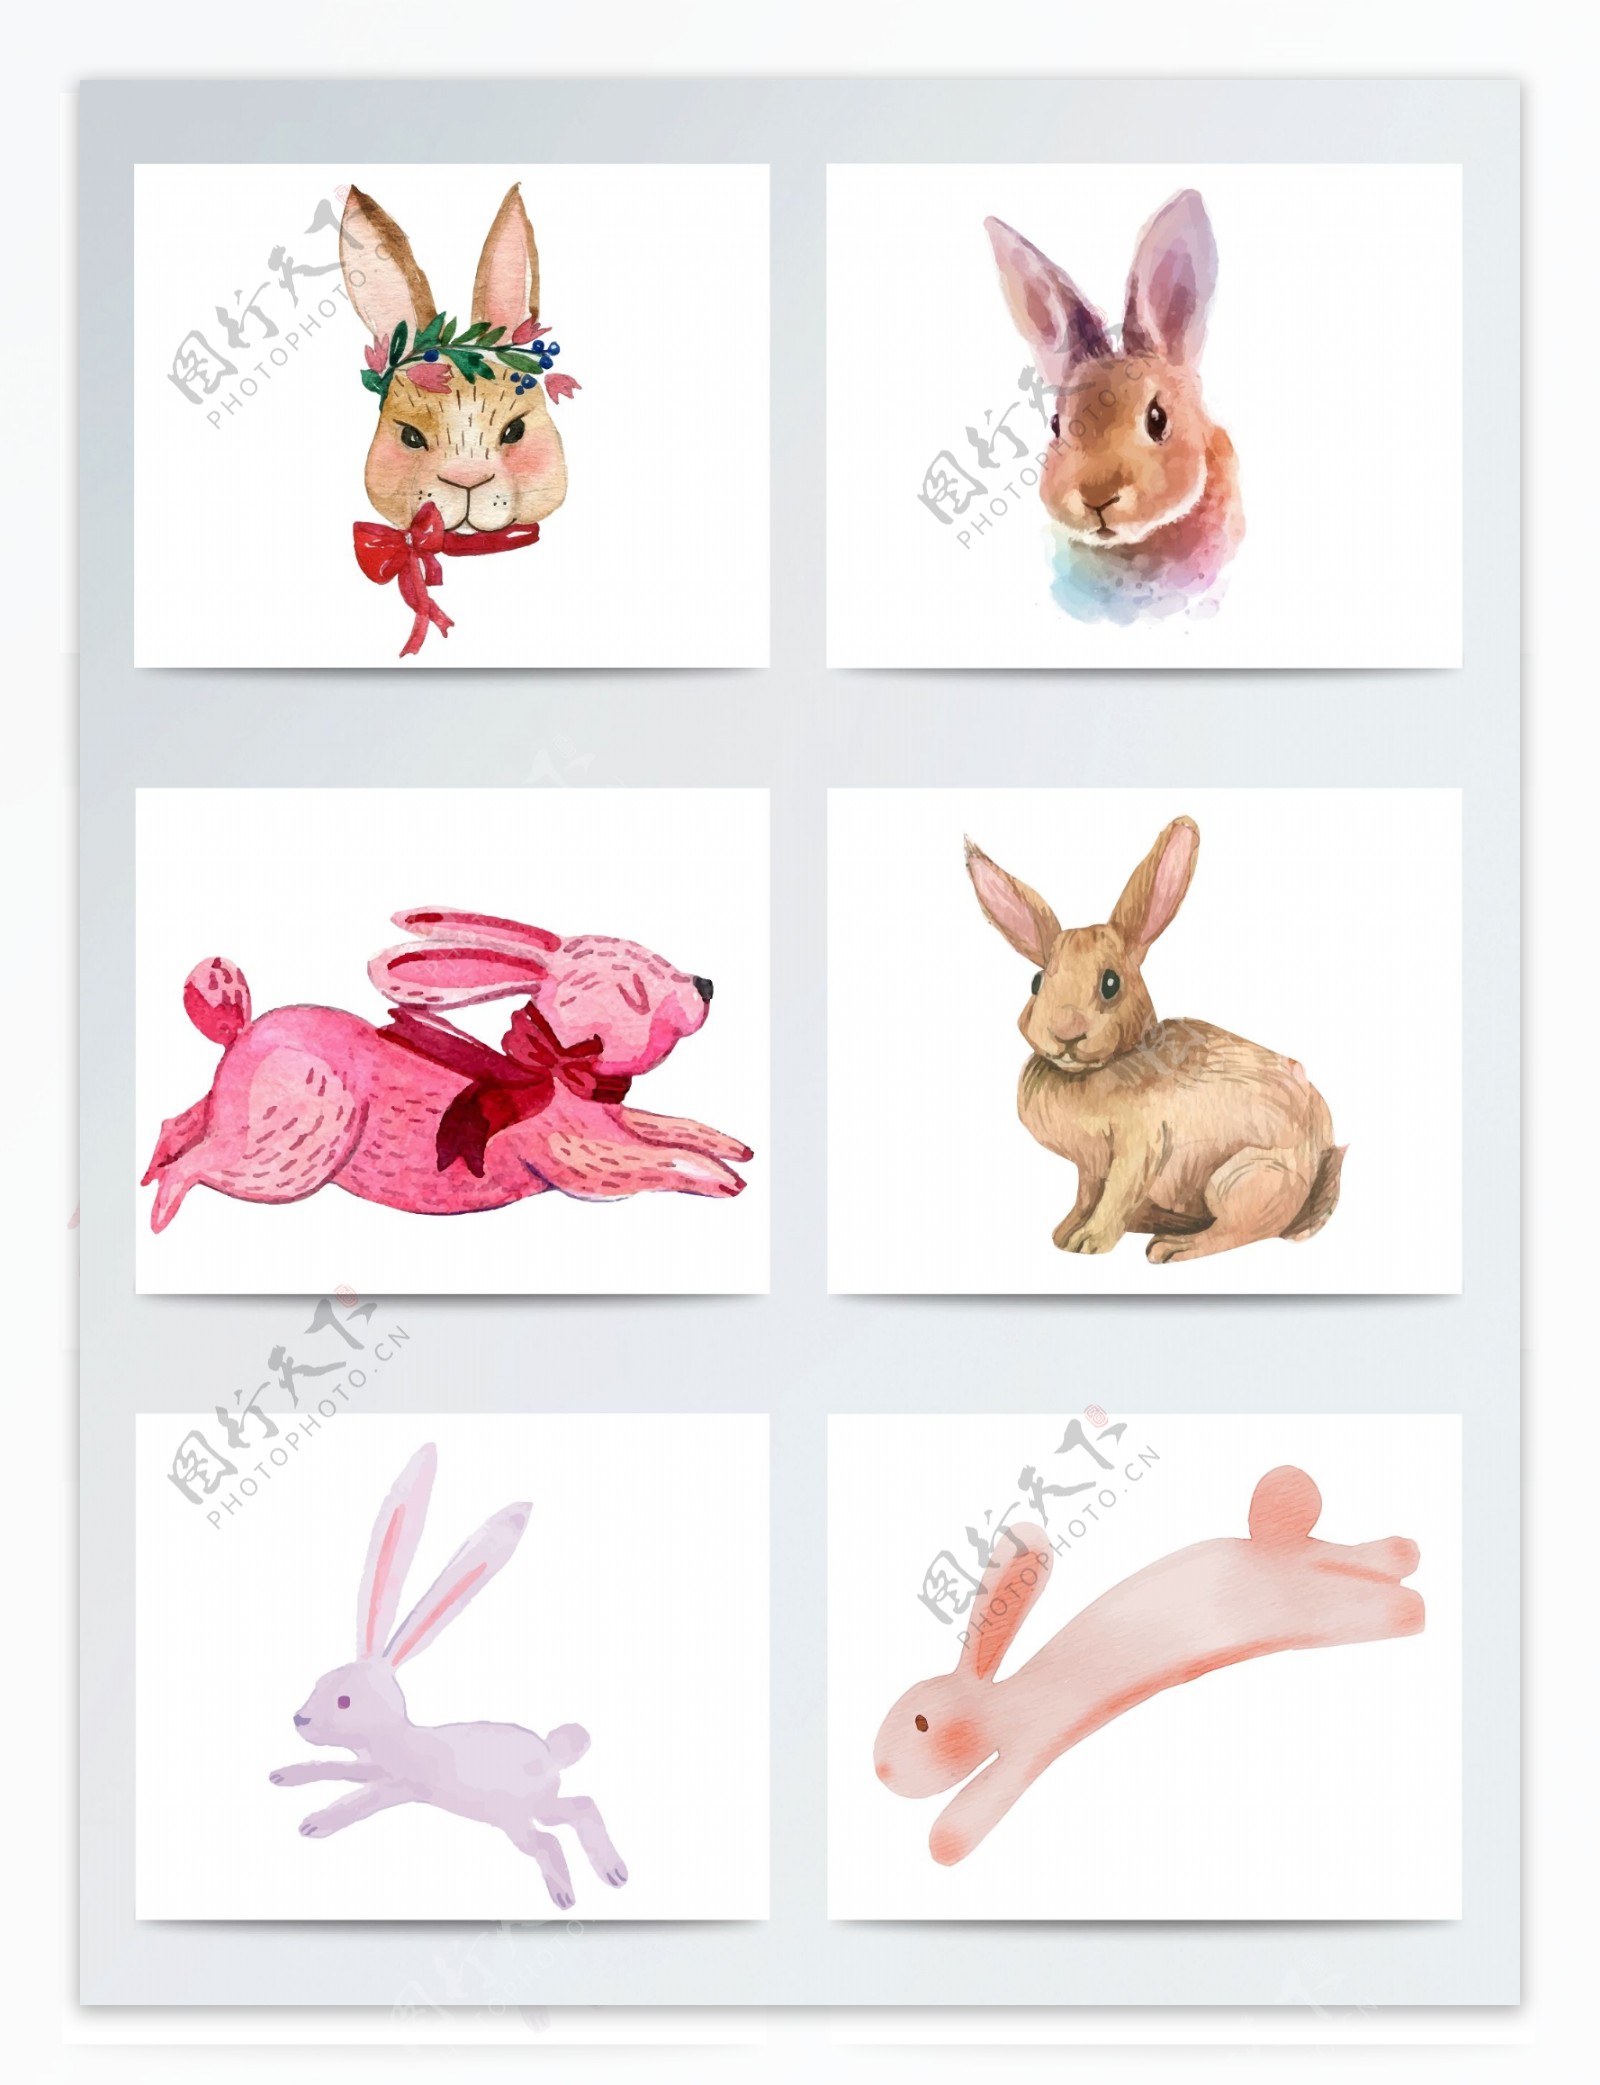 高质量水彩手绘兔子素材